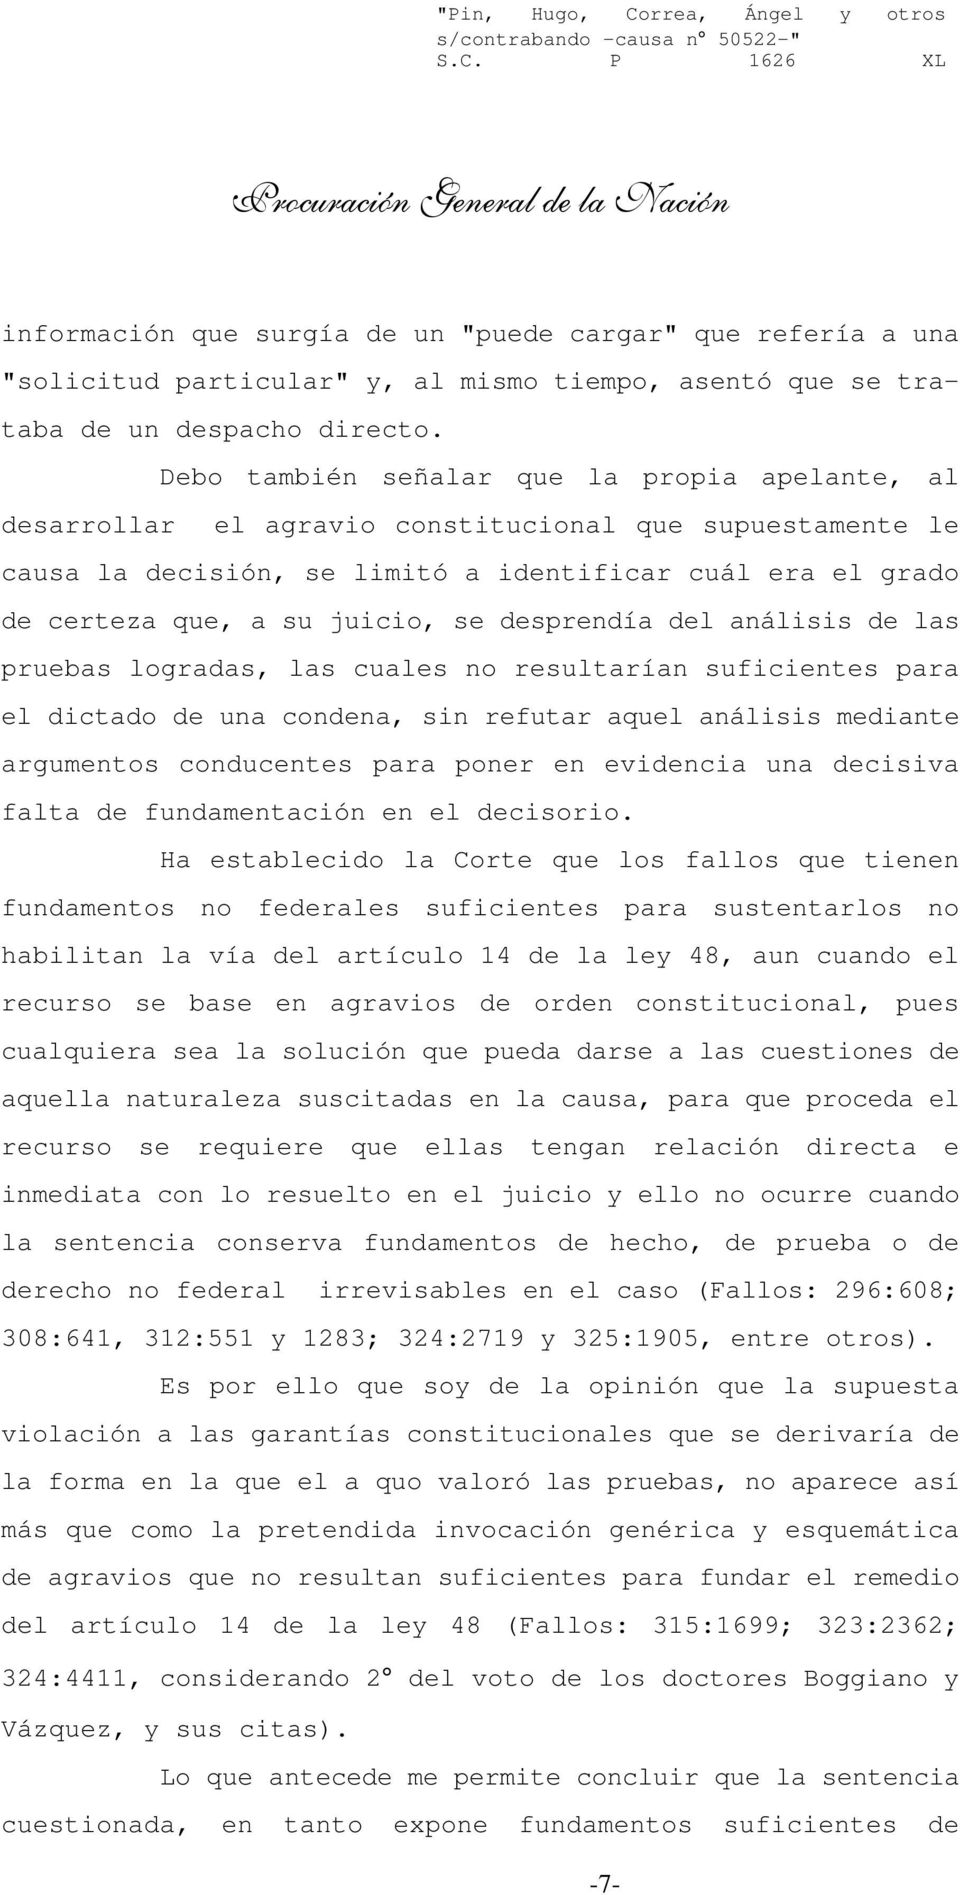 P 1626 XL Procuración General de la Nación información que surgía de un "puede cargar" que refería a una "solicitud particular" y, al mismo tiempo, asentó que se trataba de un despacho directo.